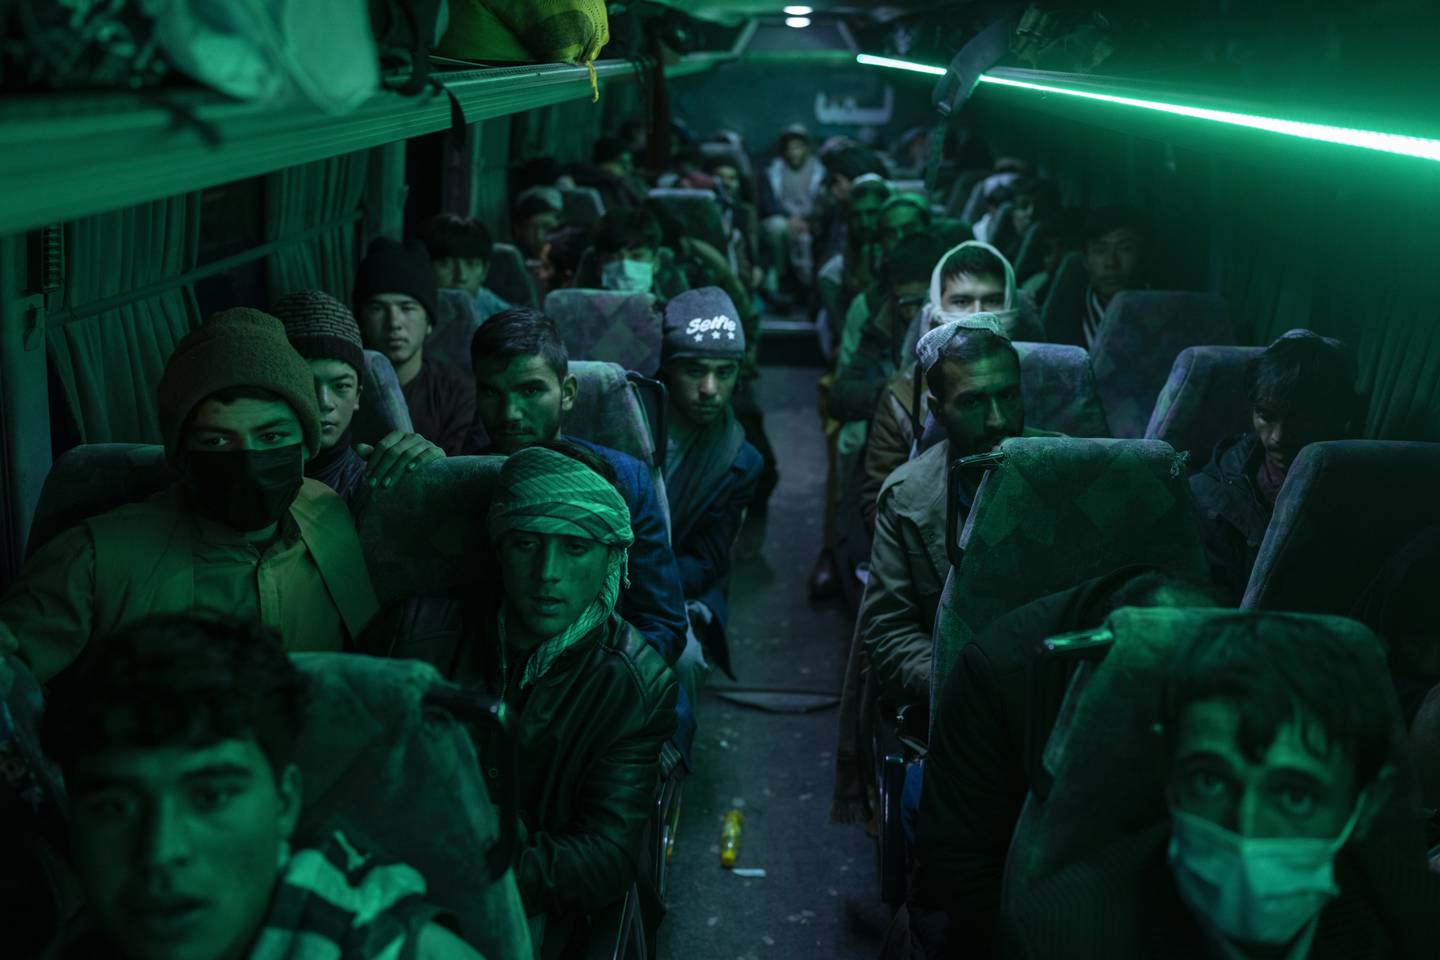 Afghanske menn sitter om bord en buss i Herat, på vei mot Nimrooz ved grensa til Iran.